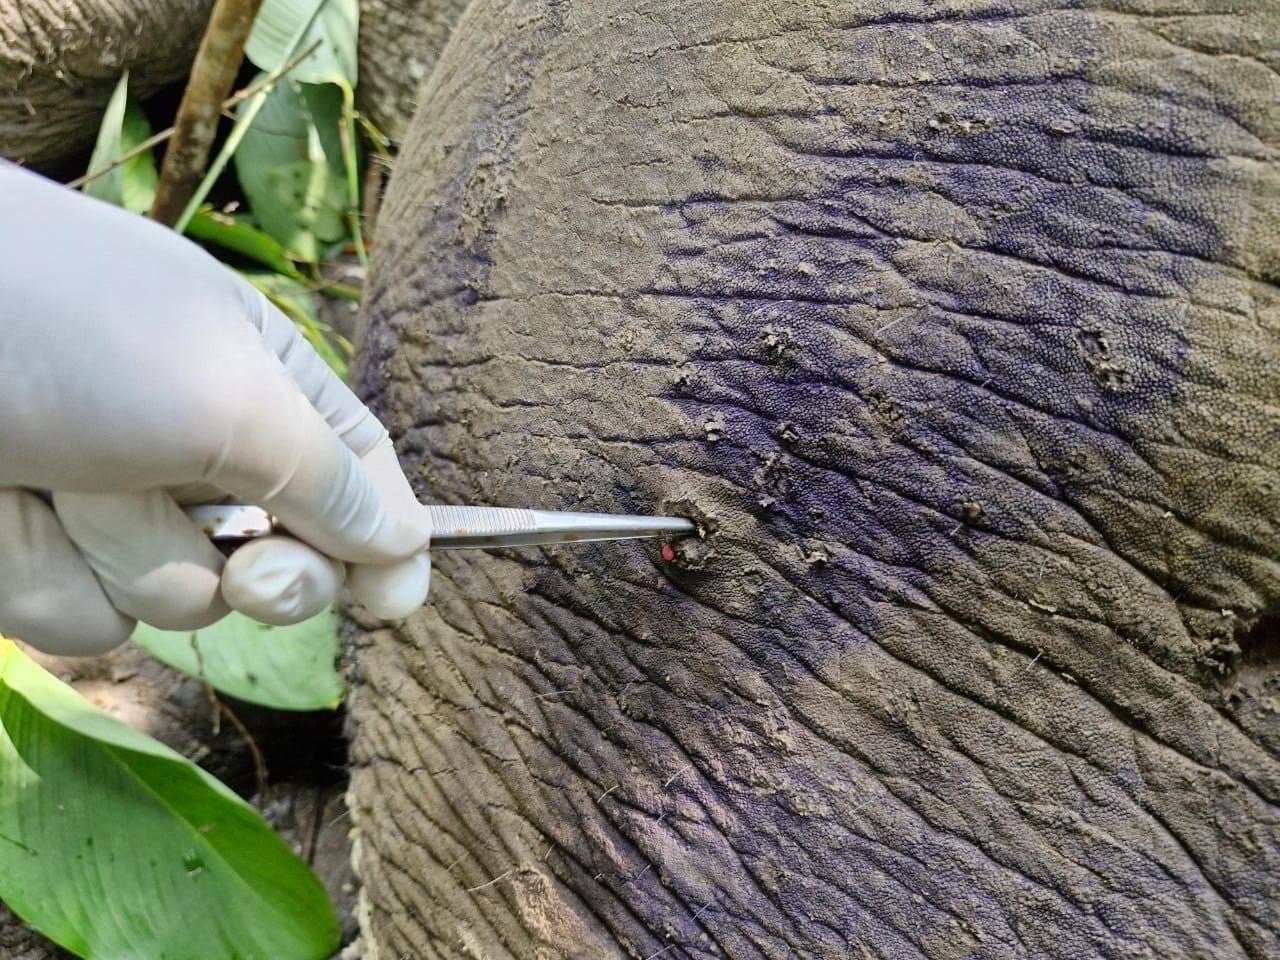 เศร้า! ช้างป่า “สีดอถั่วต้ม” ล้มแล้ว หลังถูกยิงพรุนทั่วร่างกาย